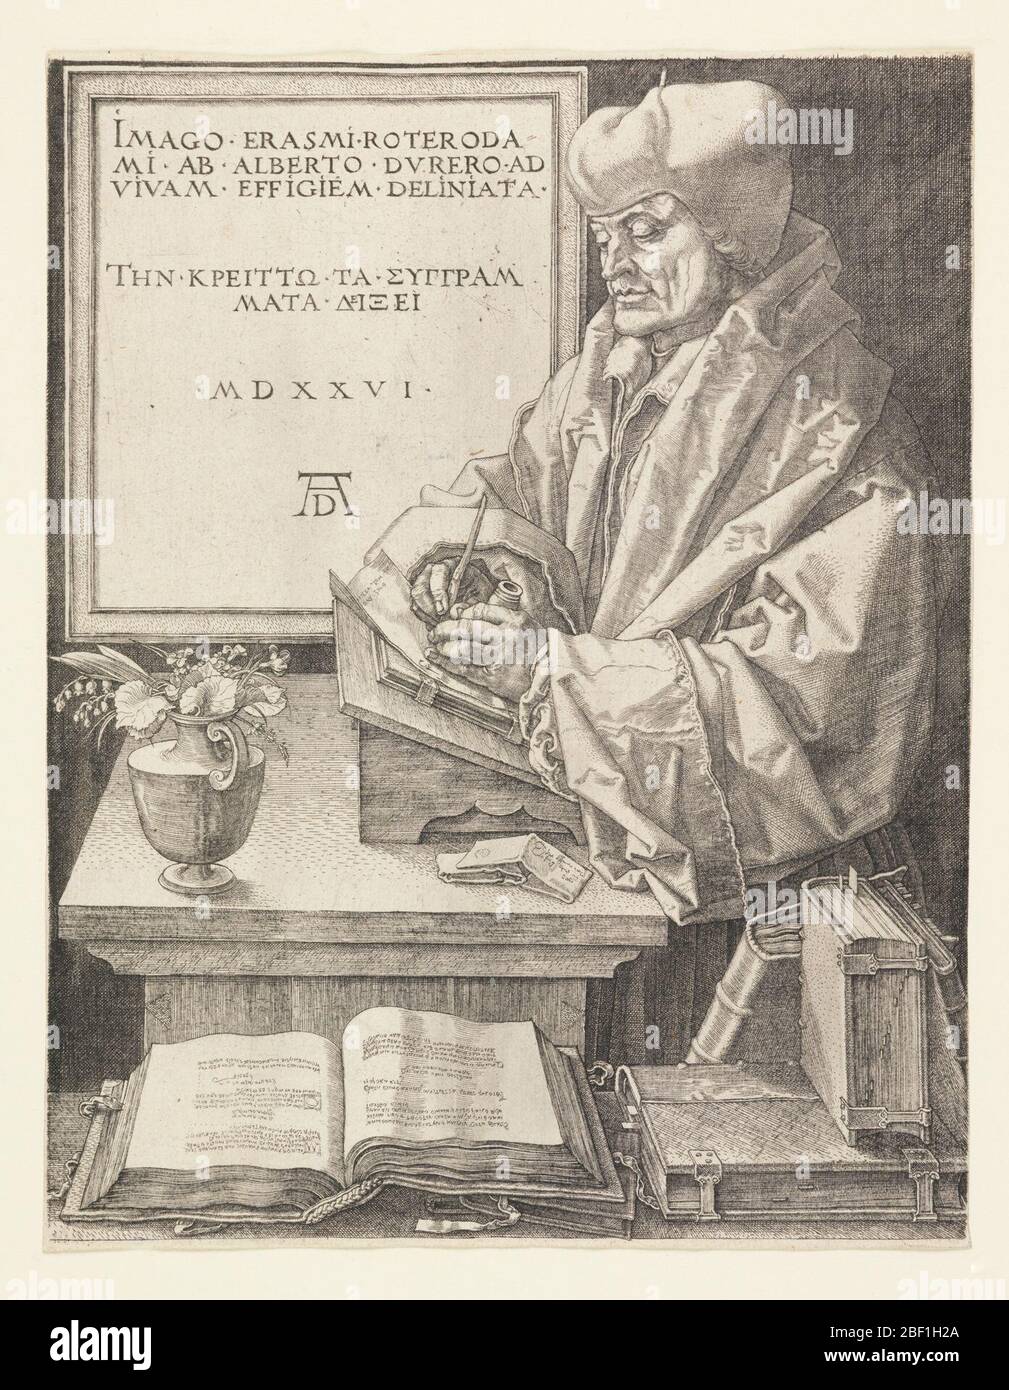 Erasmus. Erasmus ist drei Viertel Länge, stehend, mit Blick nach links vertreten. Er steht vor seinem Schreibtisch und schreibt. Bücher auf einem Vorsprung im Vordergrund. Im Hintergrund links eine gerahmte Inschrift (siehe Inschrift). Stockfoto